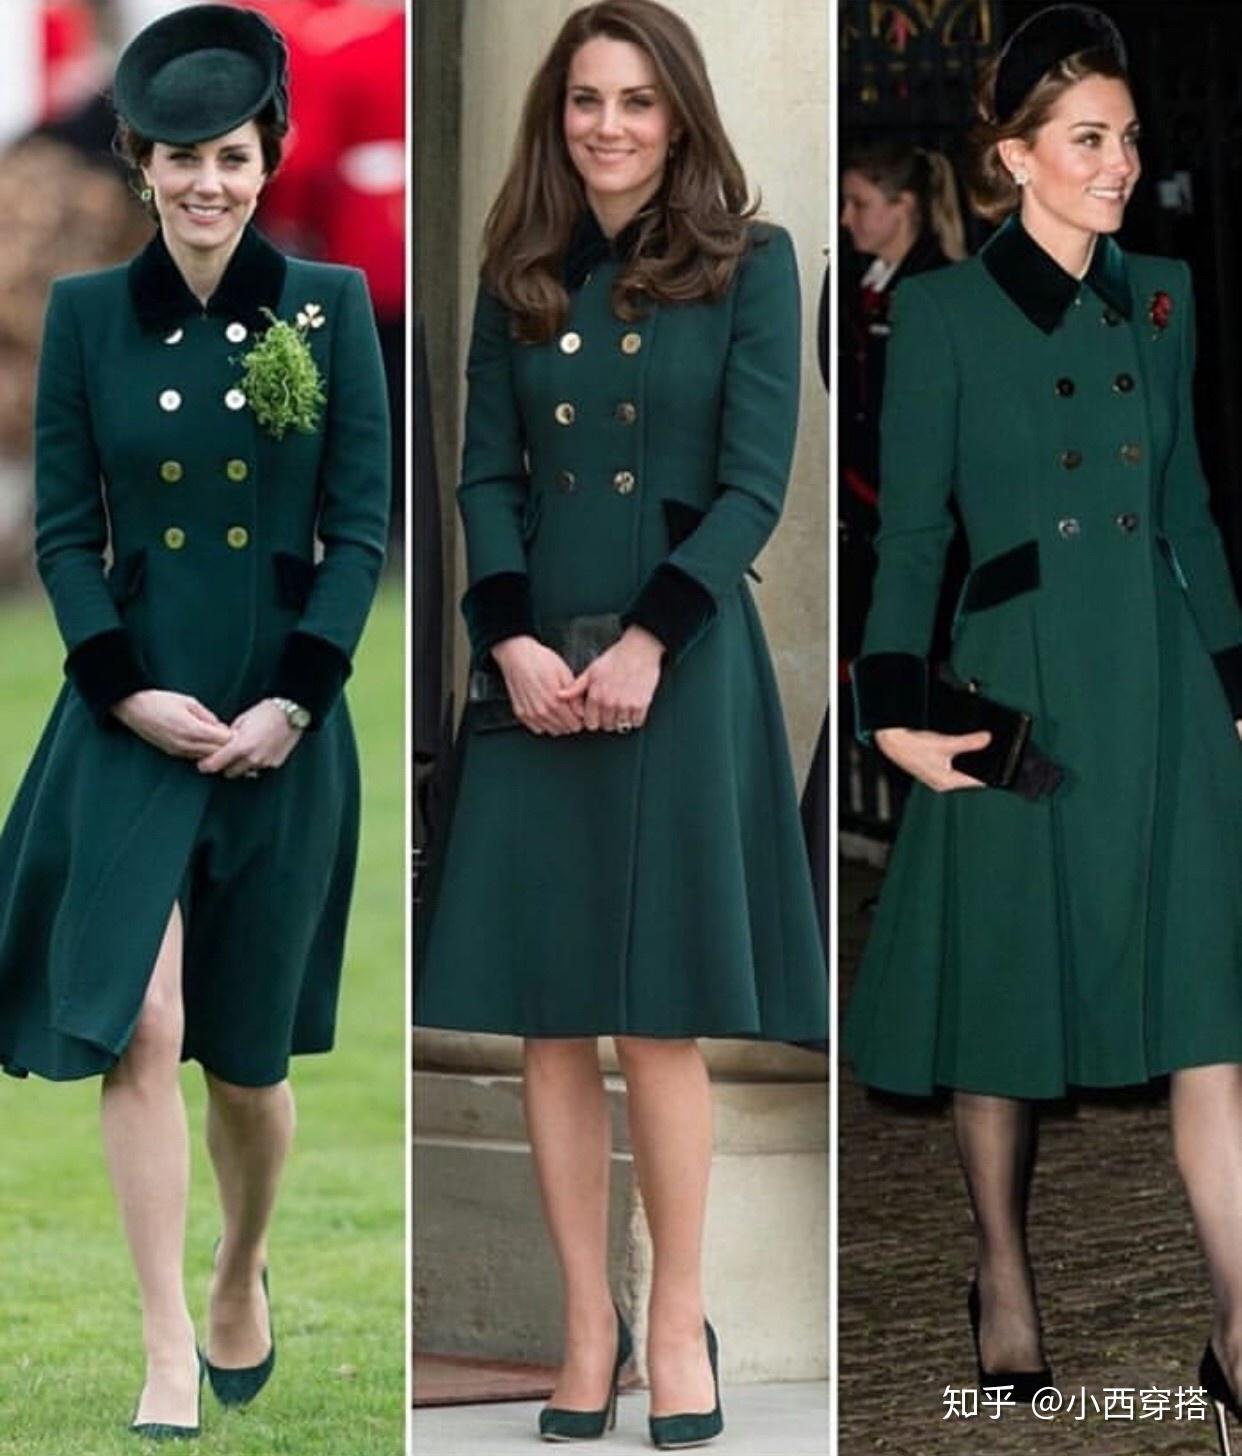 凱特王妃2年前舊衣拿出來再穿 換個髮型照樣美麗端莊 | ET Fashion | ETtoday新聞雲